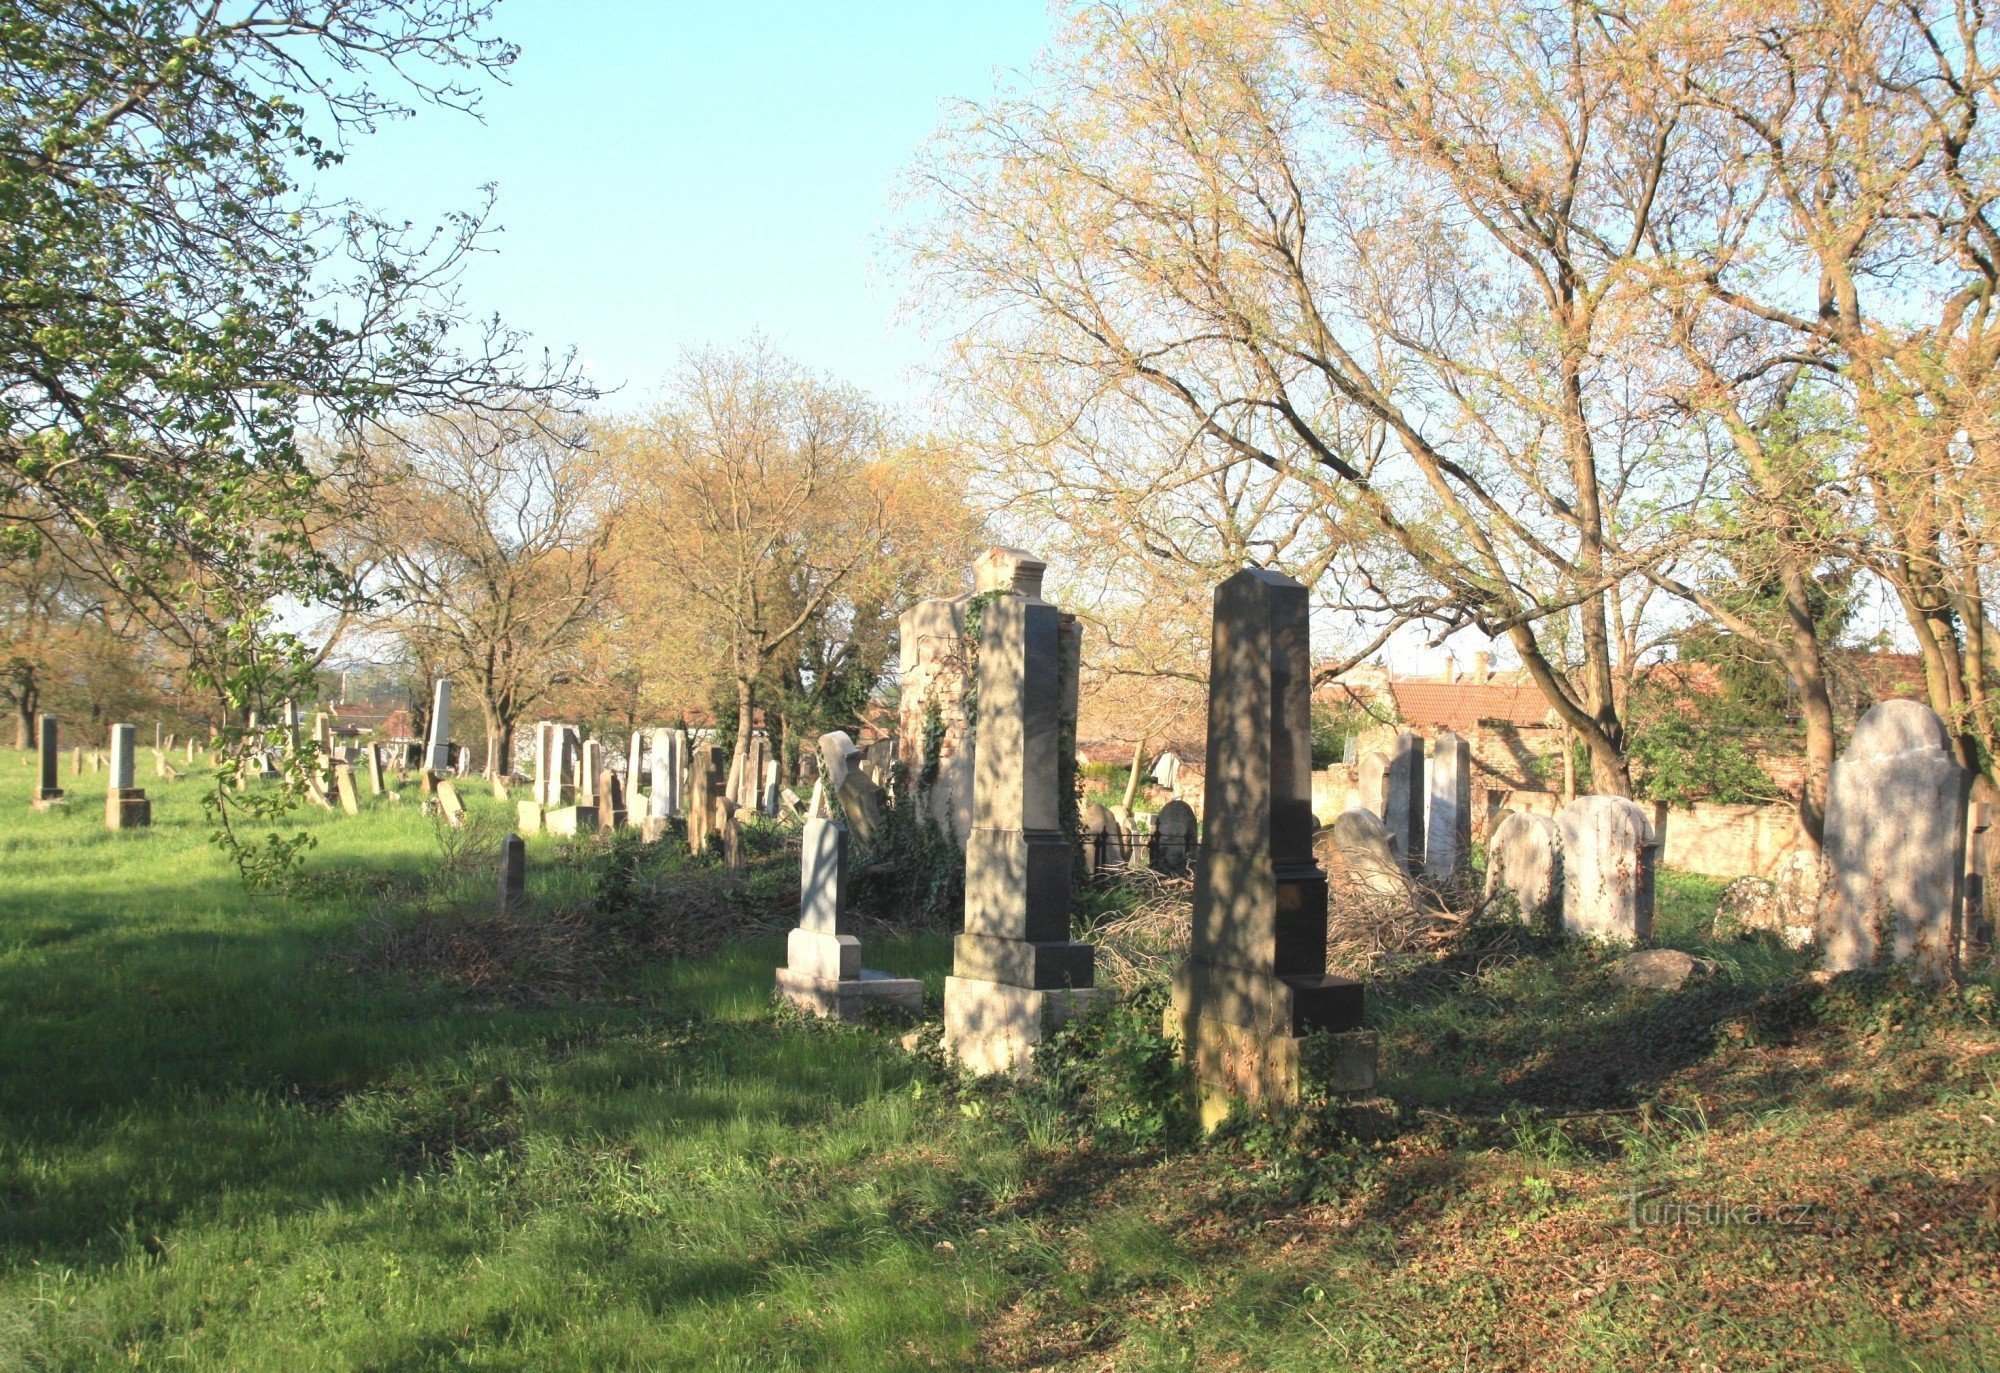 Weird - Jewish cemetery